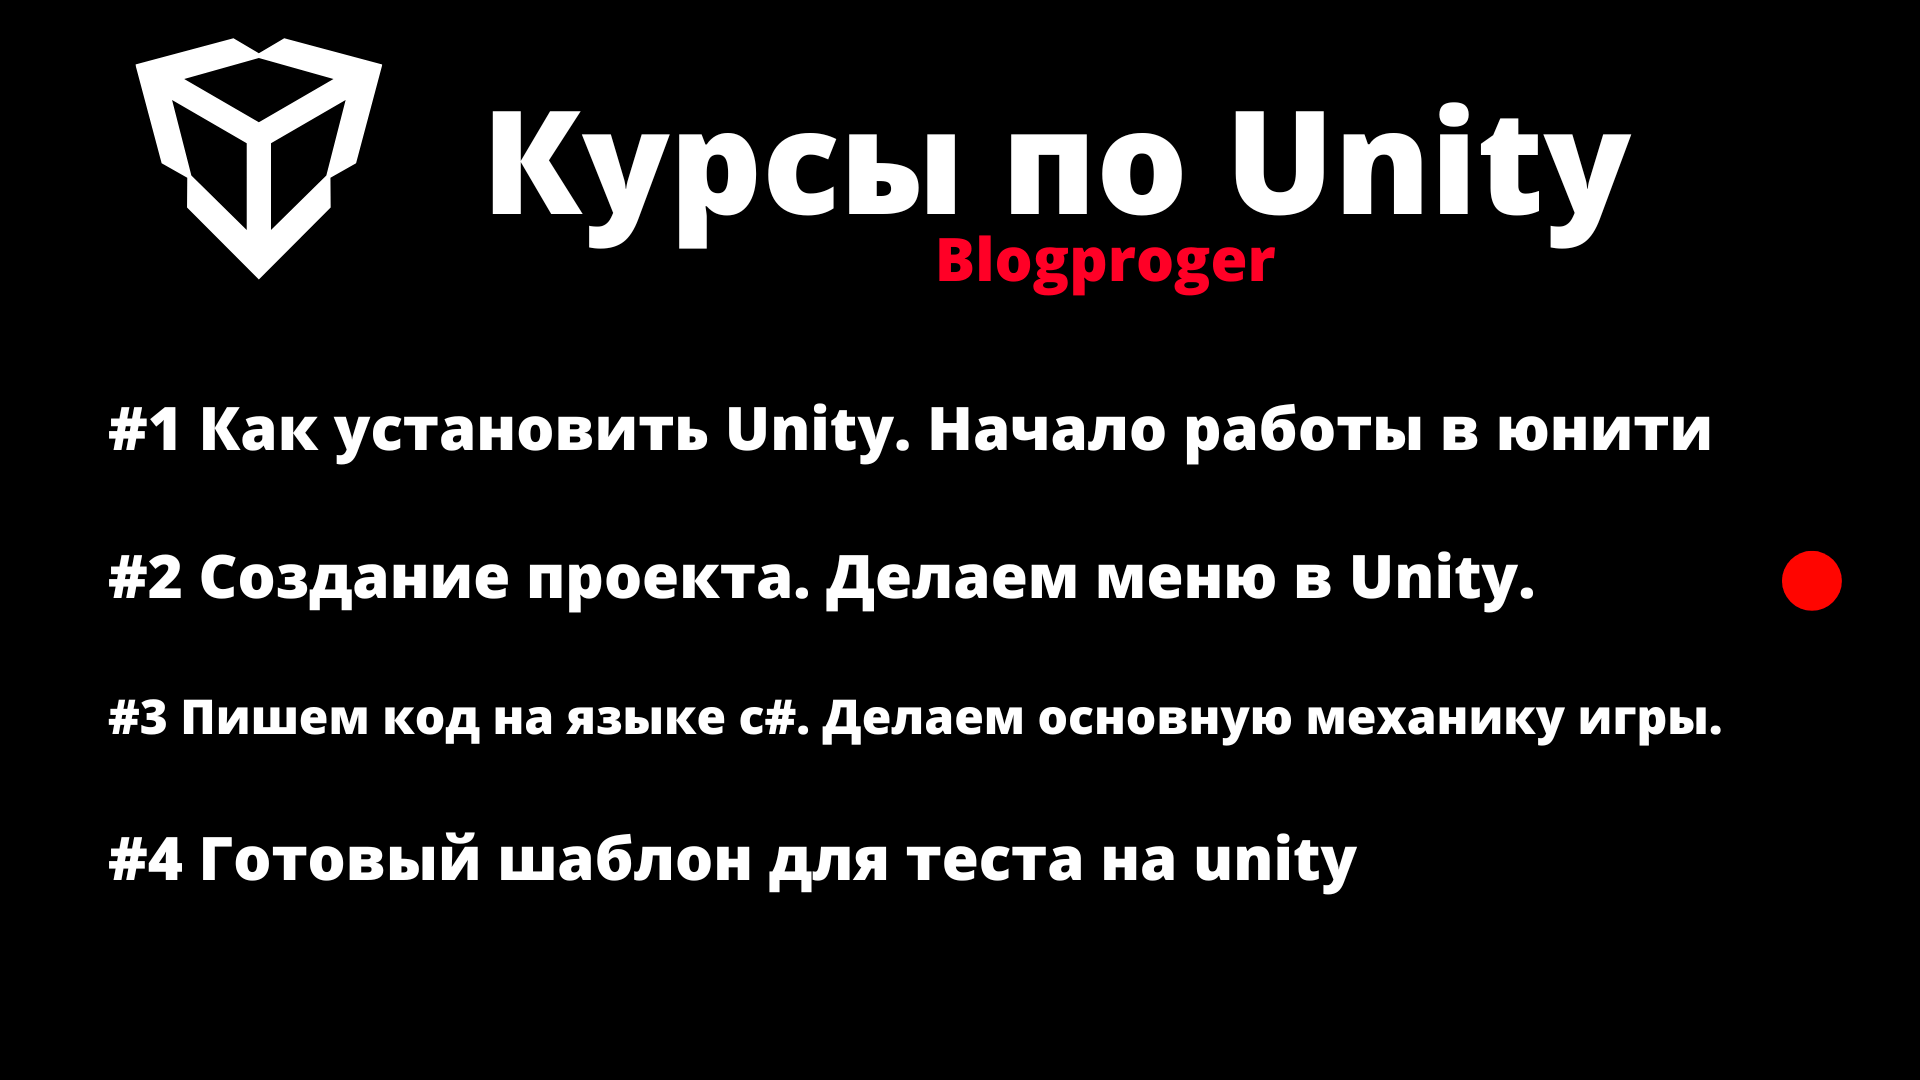 Делаем меню в Unity.